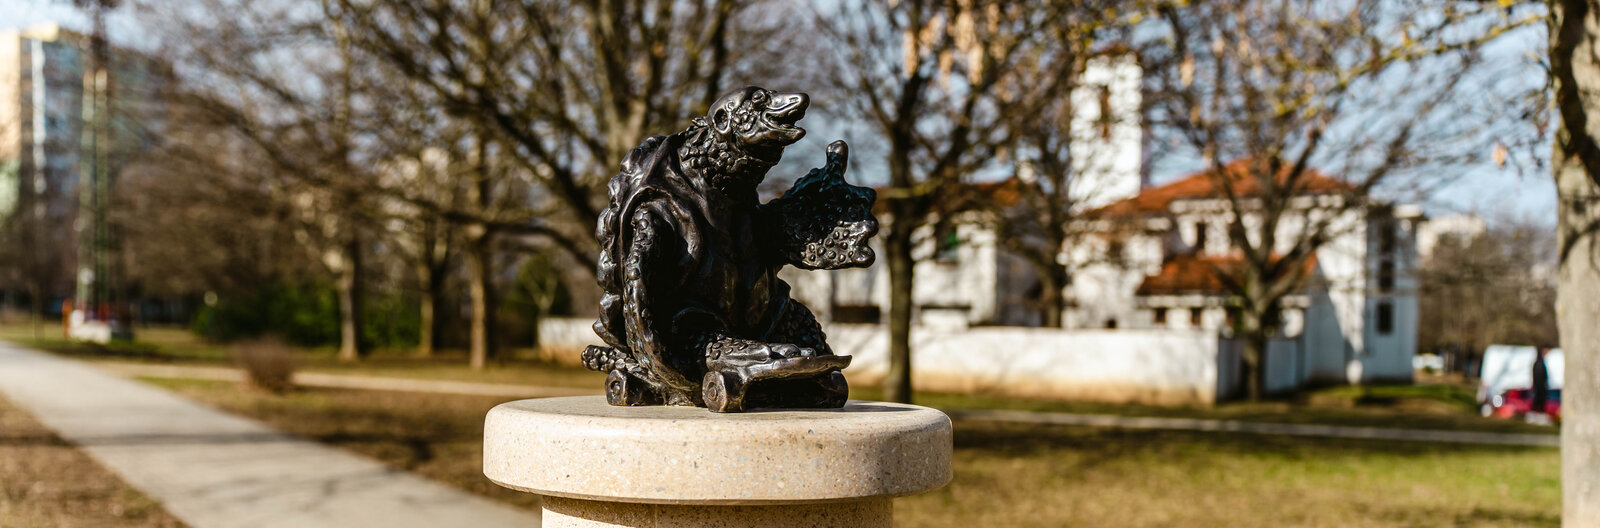 A teknős, az oroszlán és az utcazenész – Szabadtéri alkotások Veszprémben